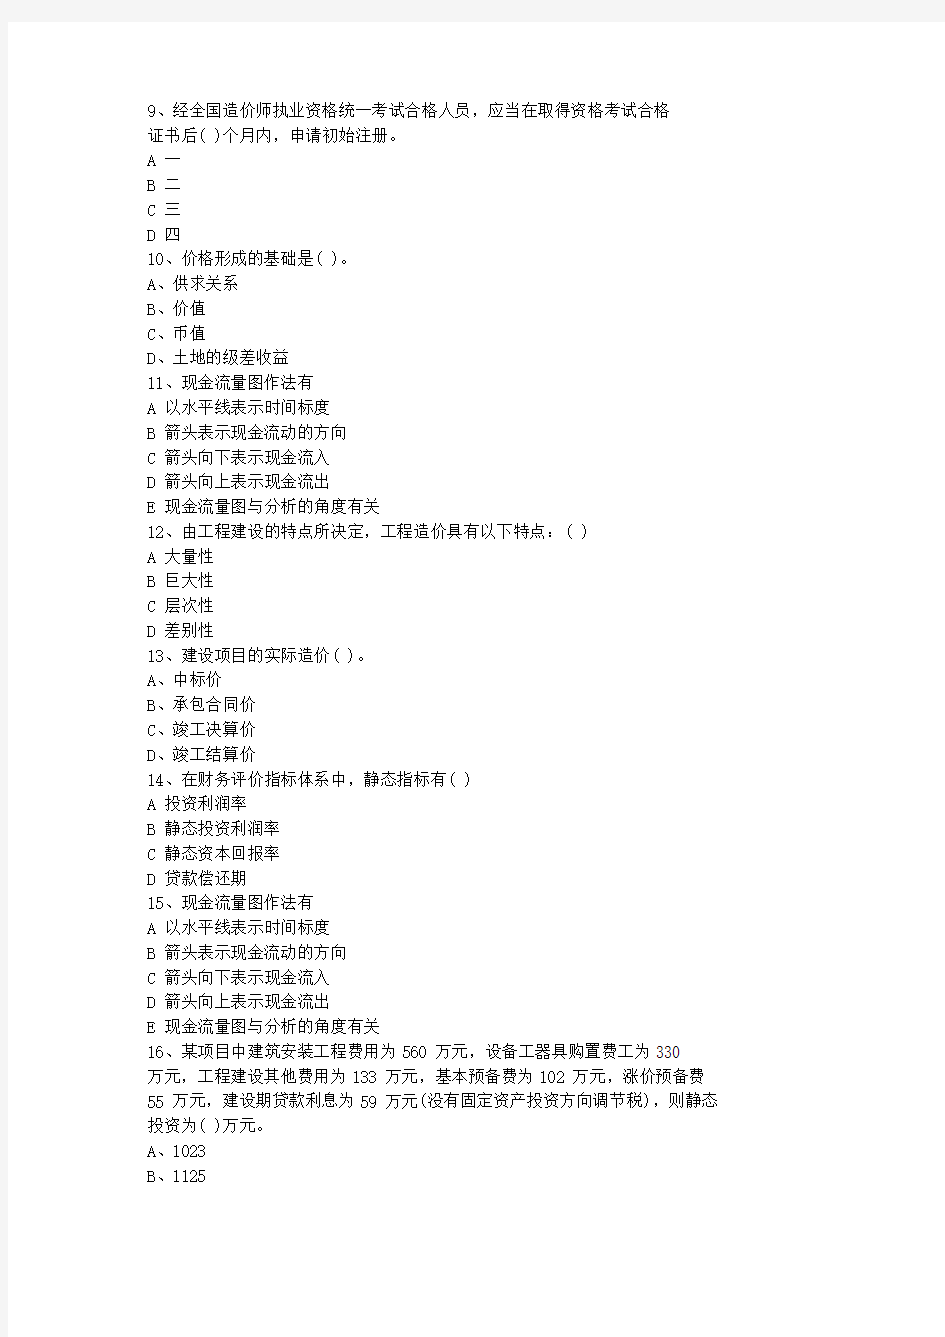 2011湖南省造价员考试试题及答案全(打印版)最新考试试题库